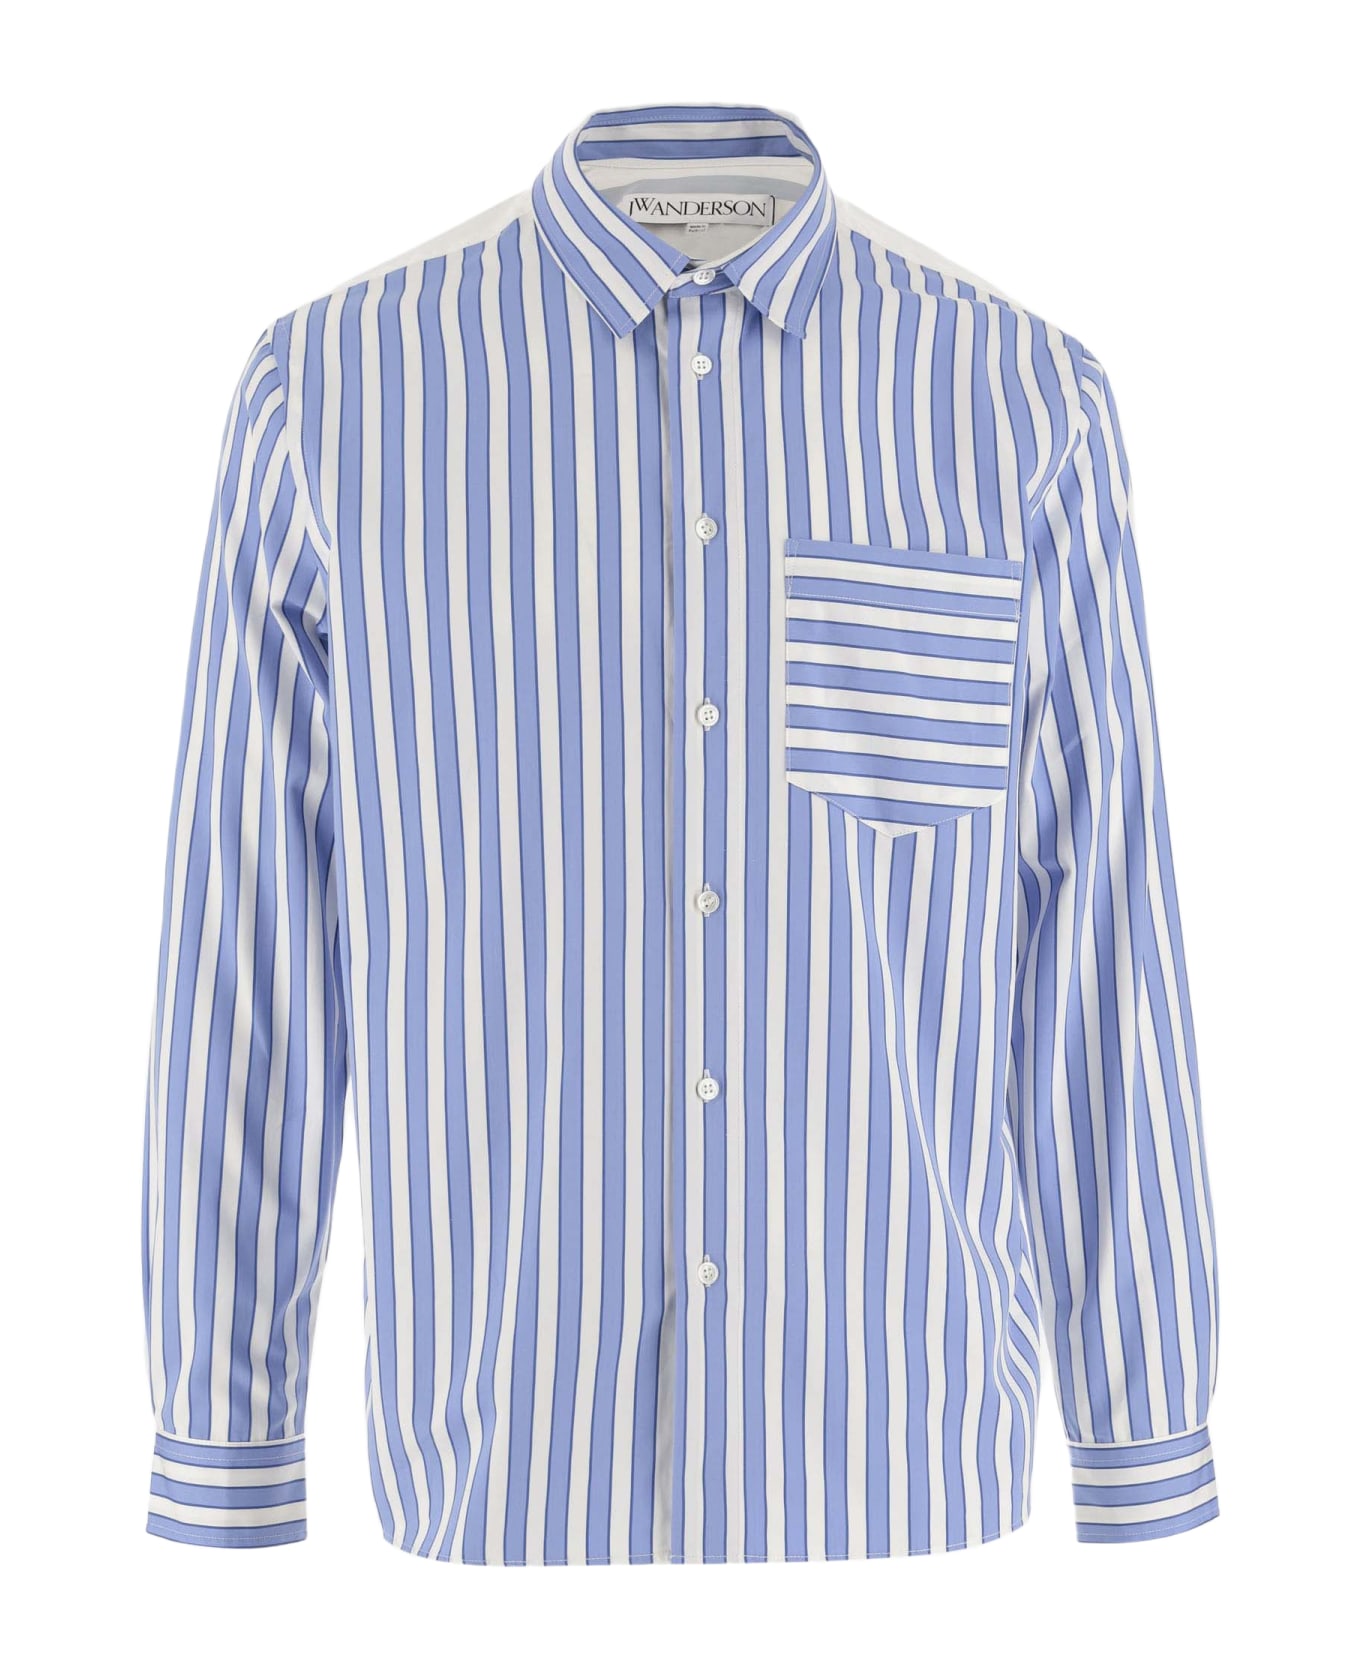 J.W. Anderson Striped Cotton Shirt - Blue/white